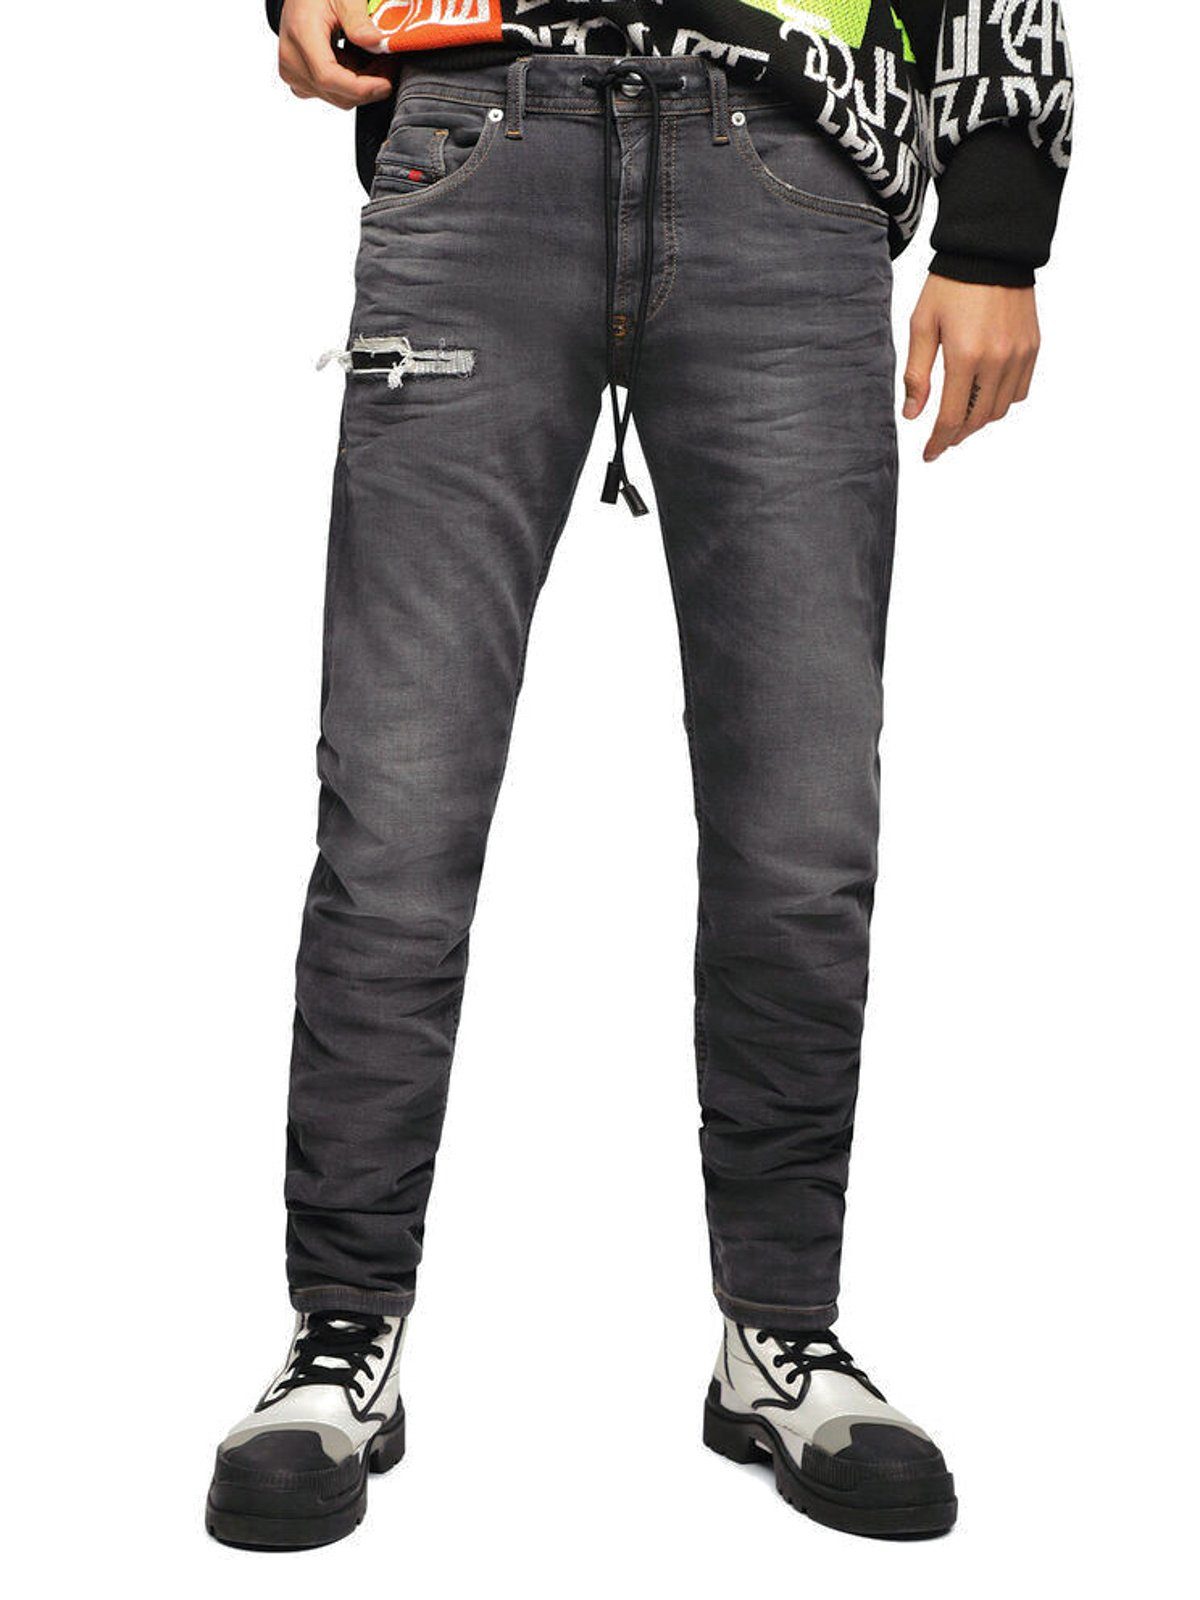 Diesel Slim-fit-Jeans Stretch Jogg Jeans Hose Schwarz, Thommer CB-NE 069EM  online kaufen | OTTO